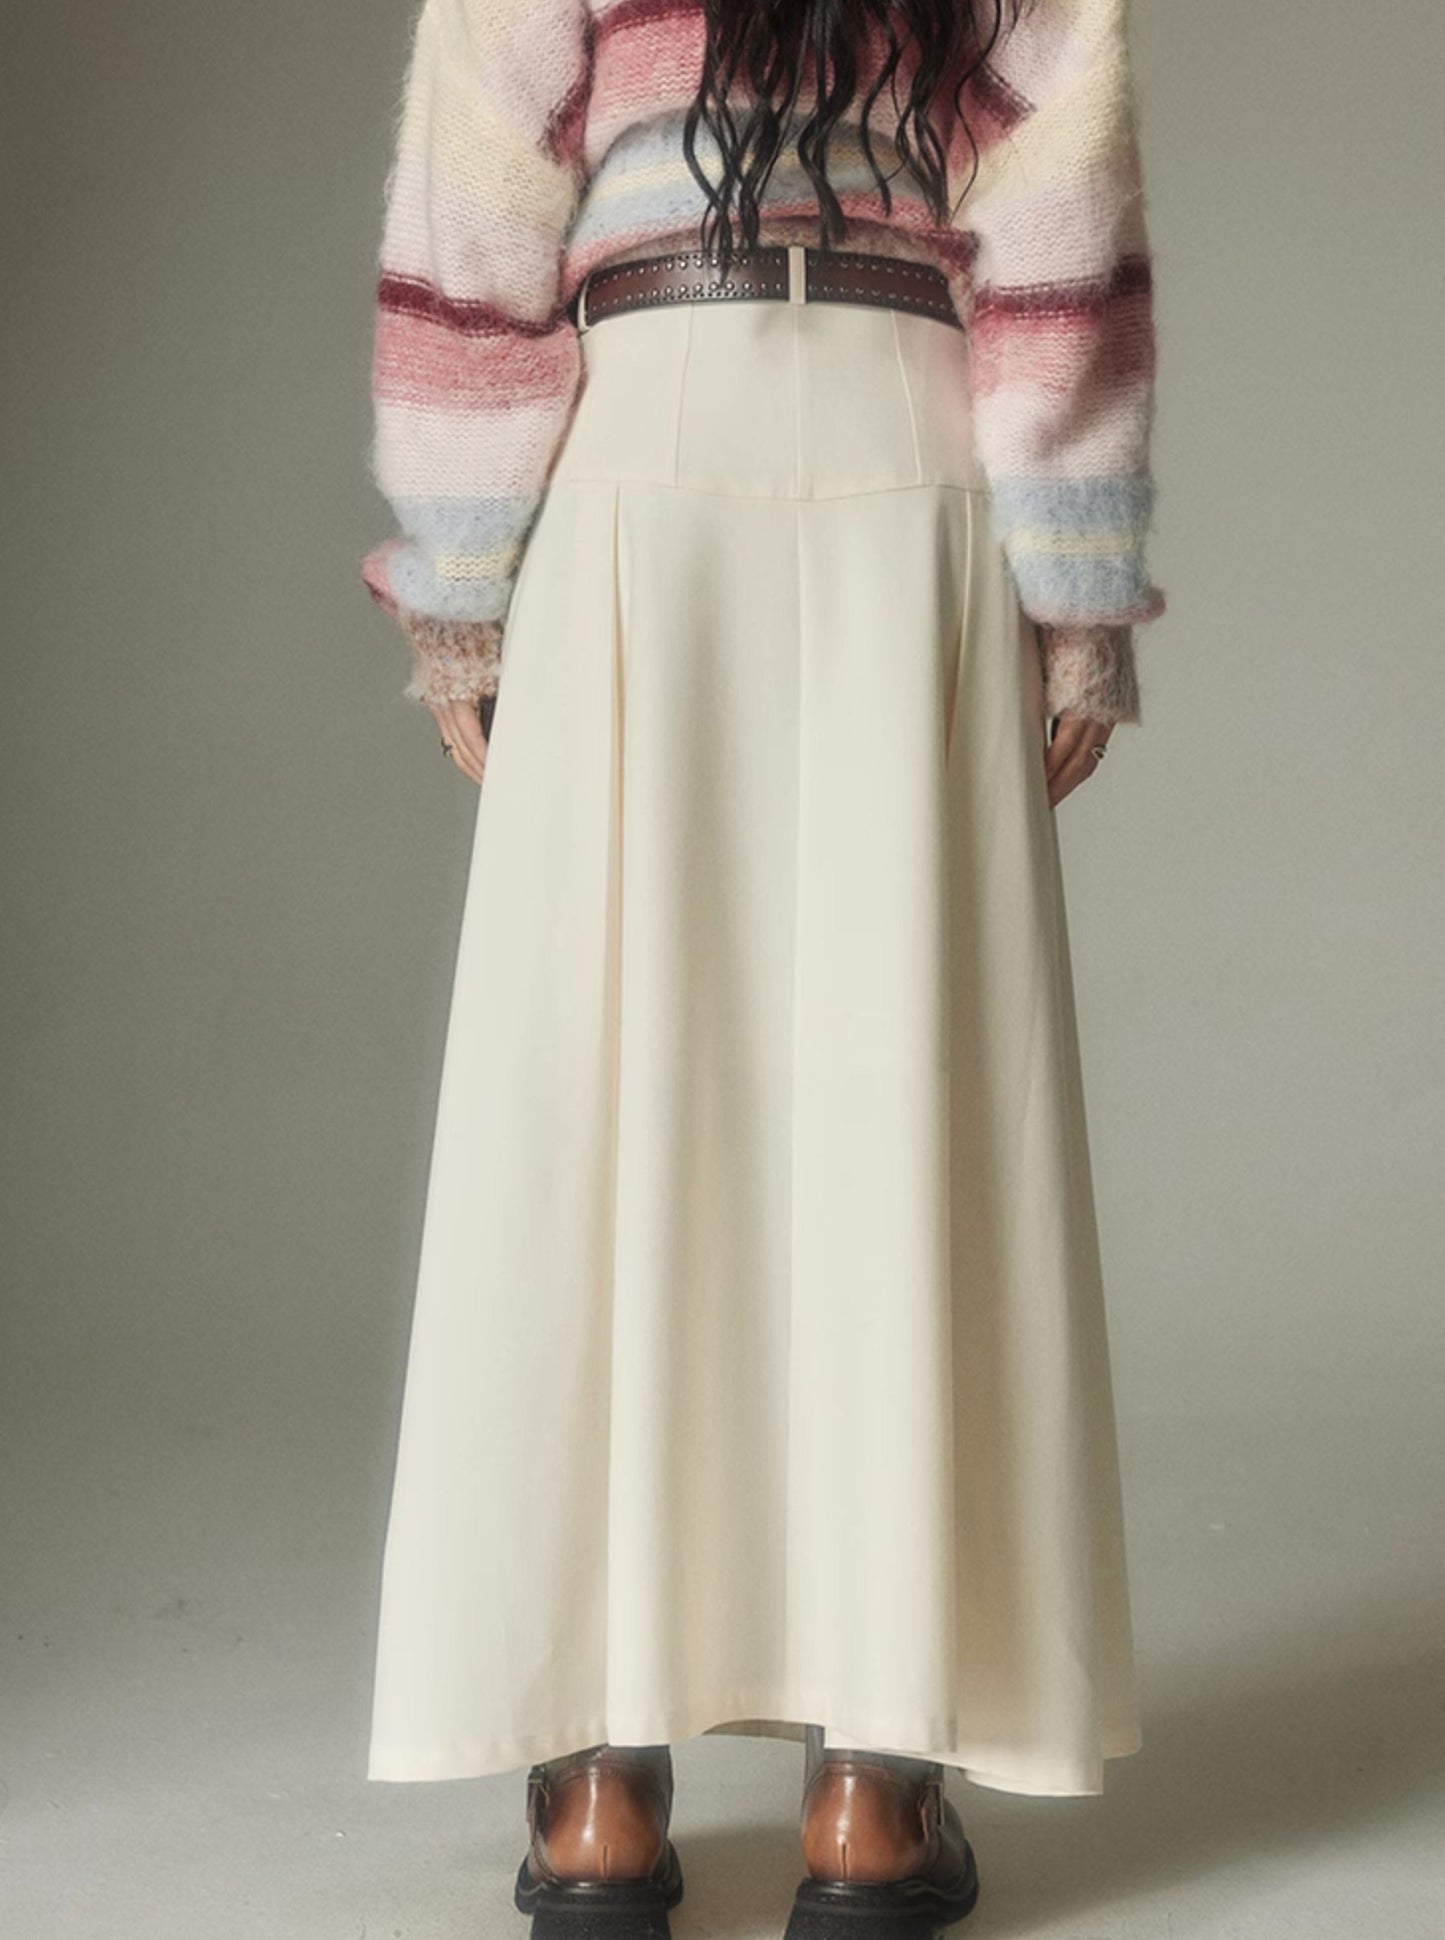 A-line versatile long skirt